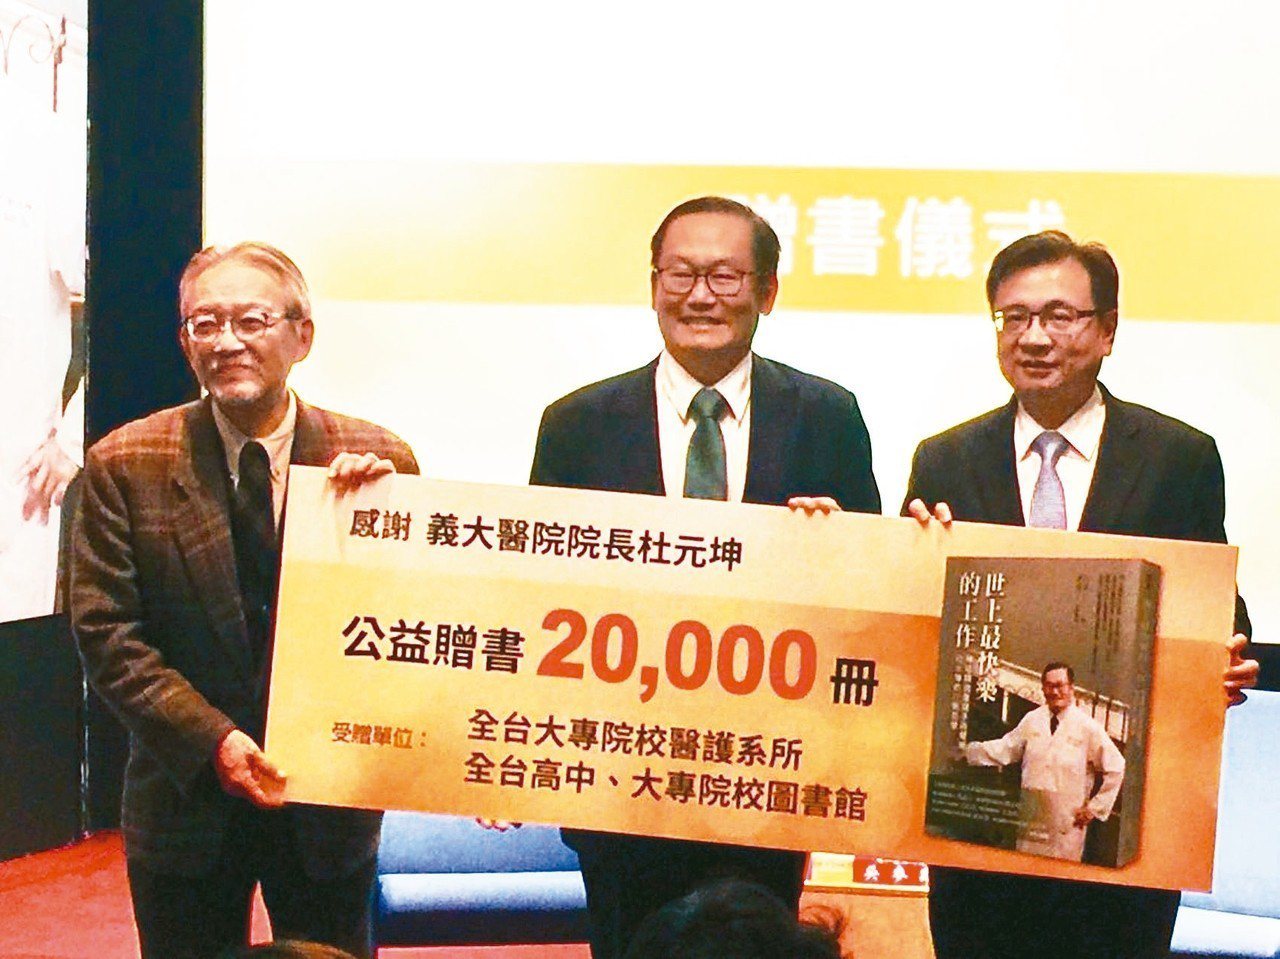 義大醫院院長杜元坤(中)昨捐贈2萬本新書「世上最快樂工作」給母校台北醫學大學。